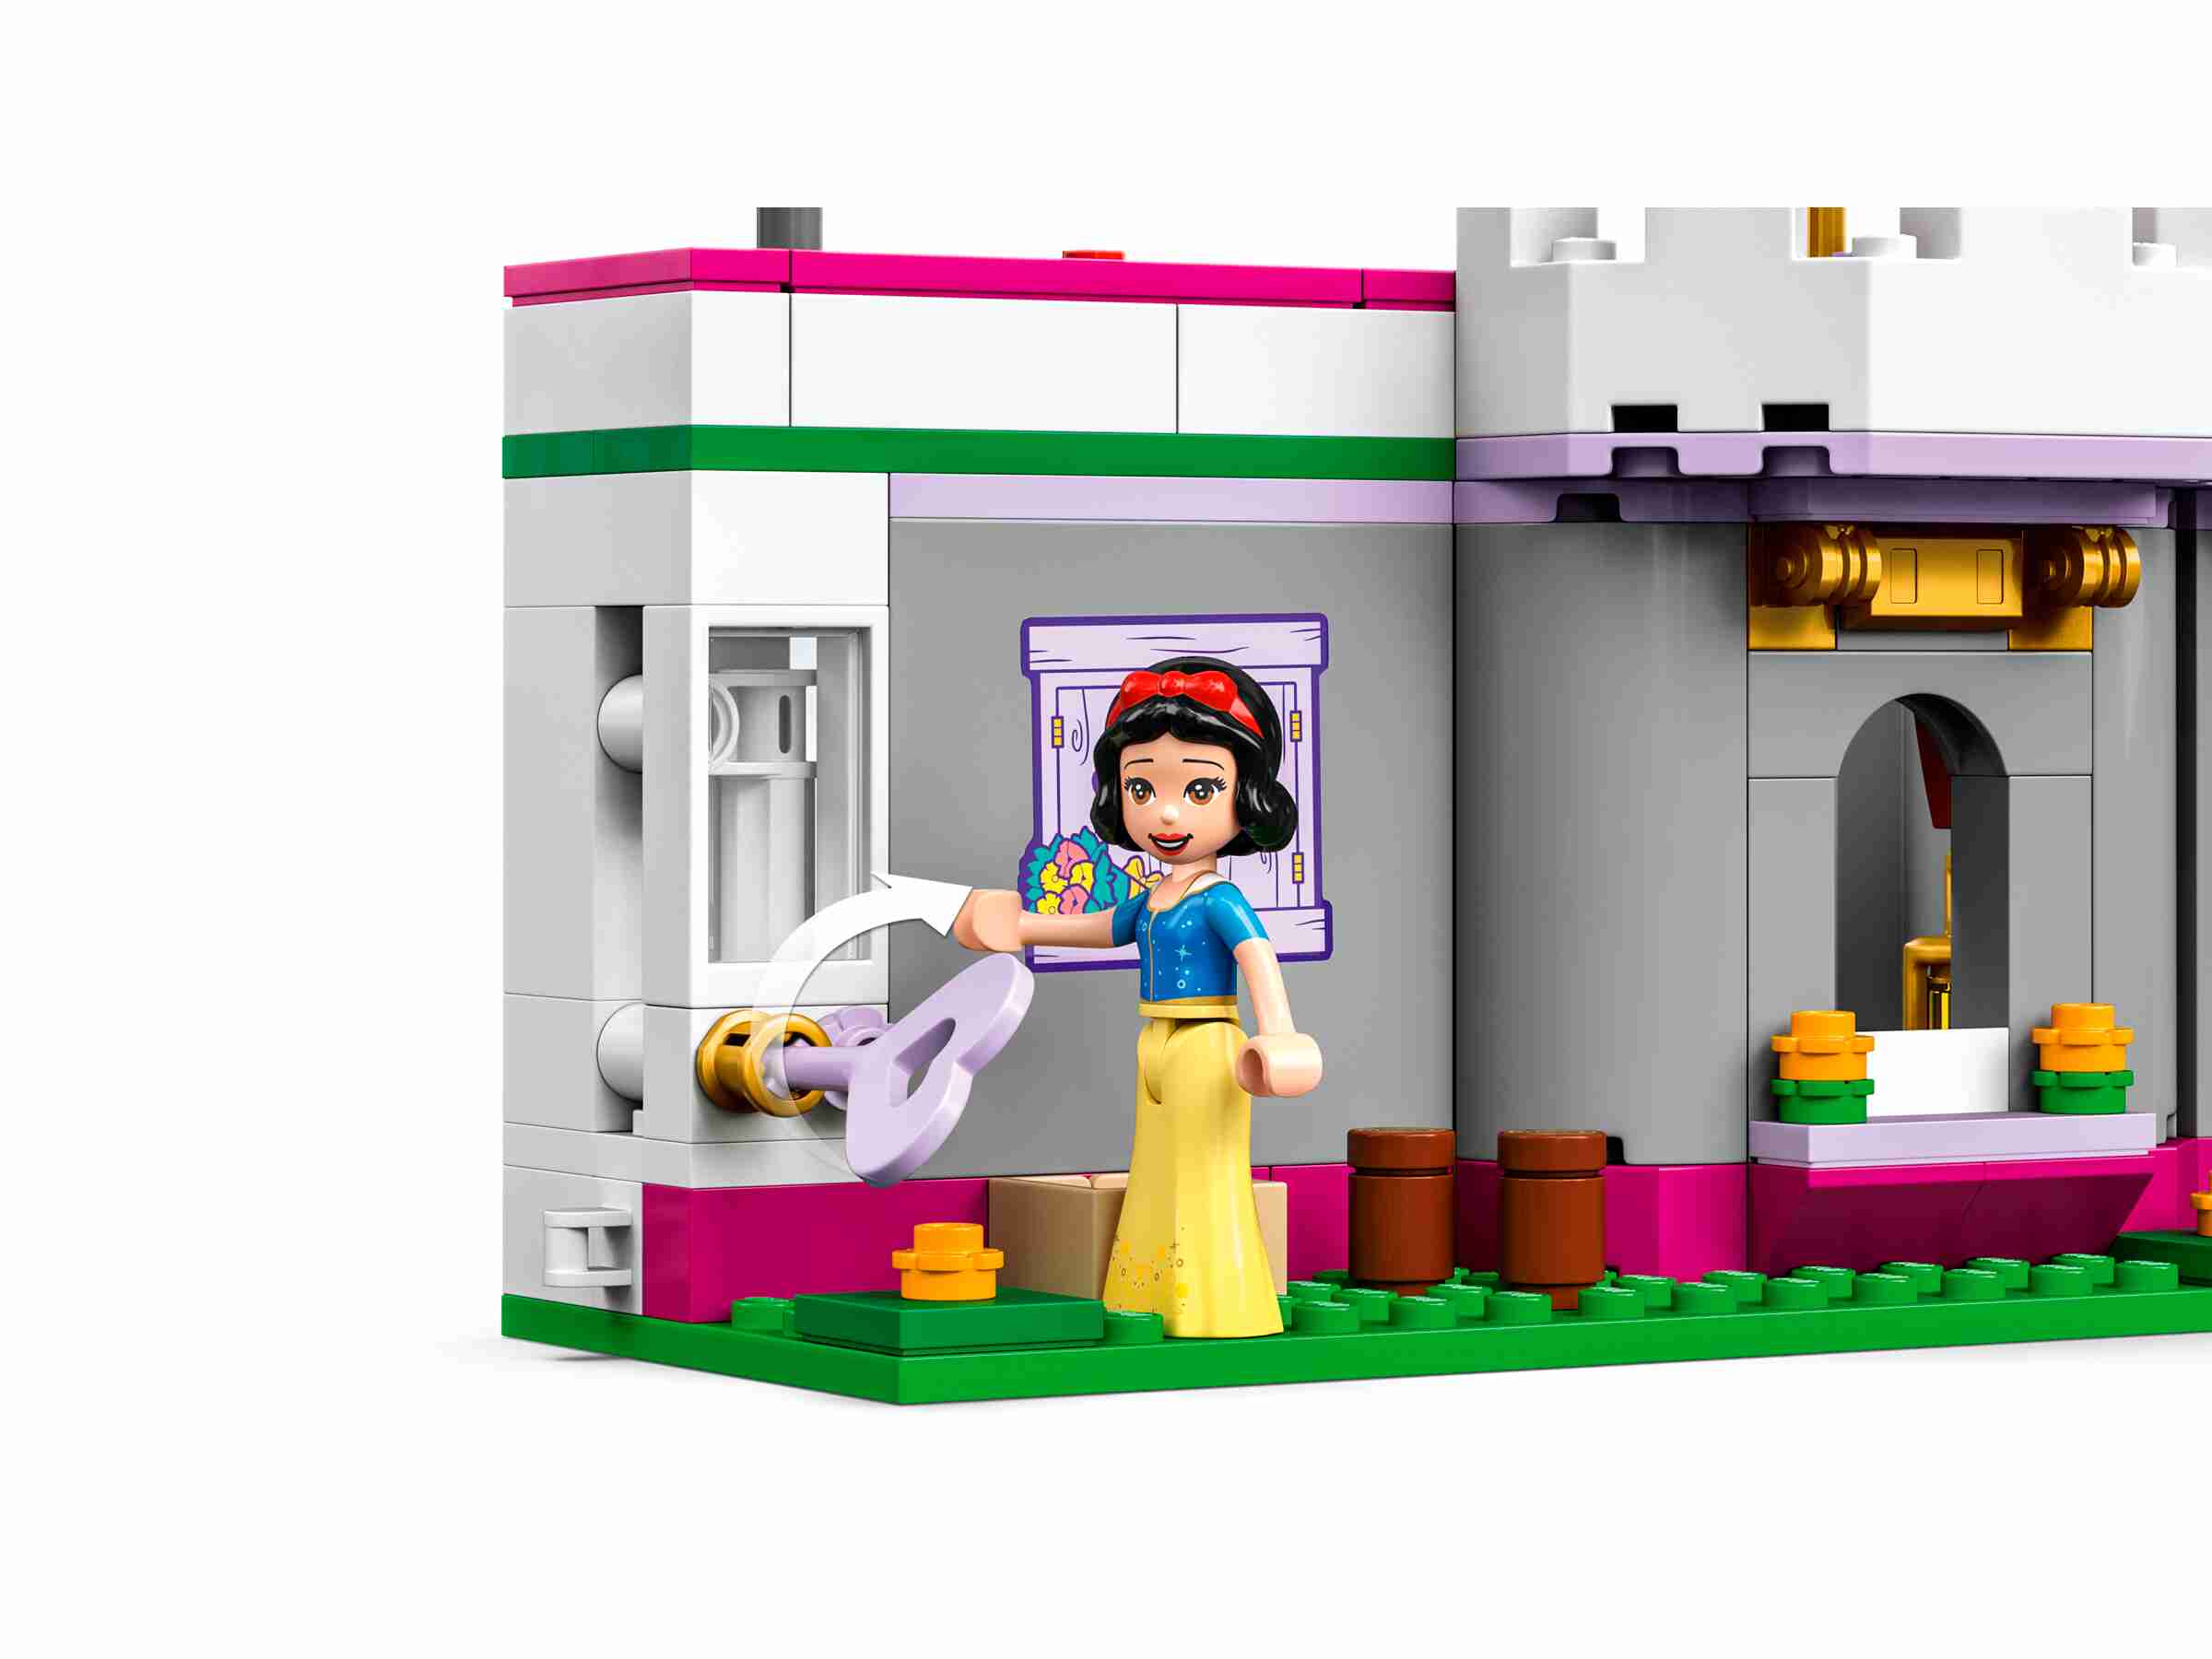 LEGO 43205 Disney Princess Ultimatives Abenteuerschloss, Prinzessinnenschloss